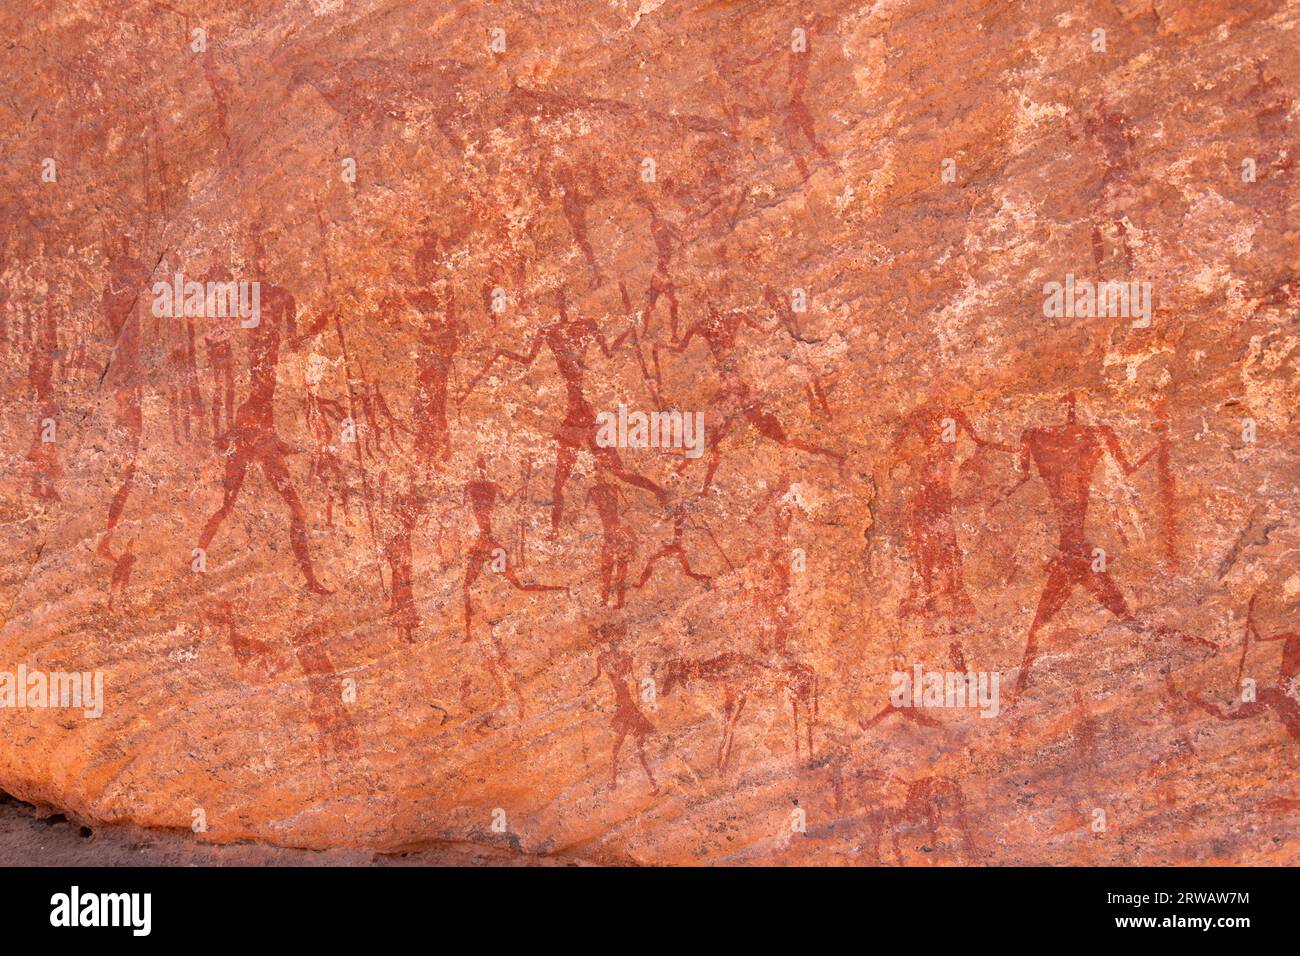 rock art in the sahara desert Stock Photo